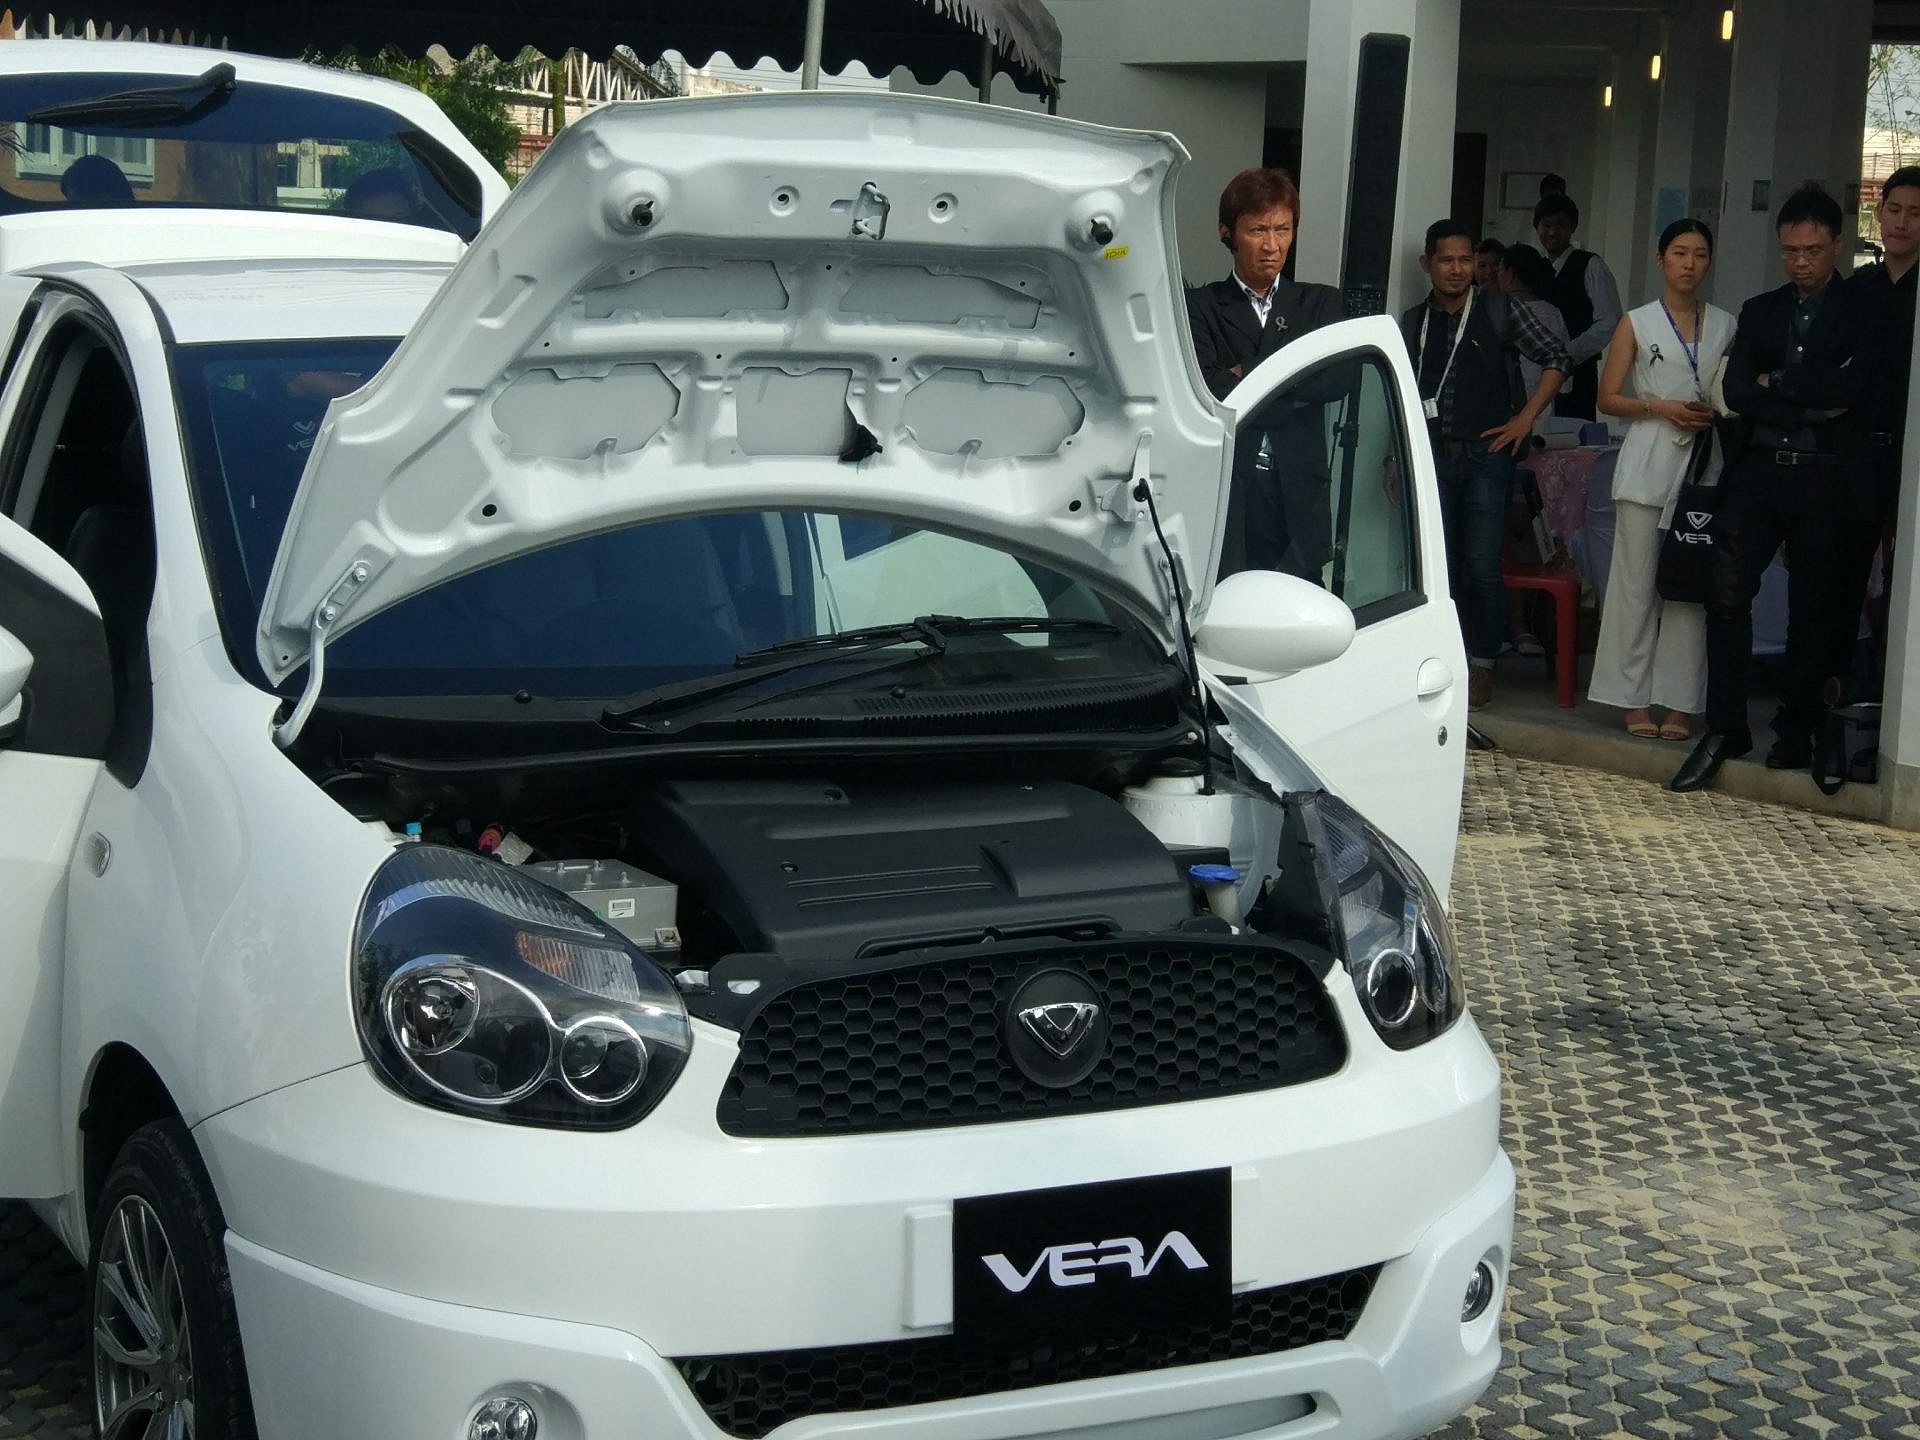 เตรียมเจอตัวจริง Vera V1 รถไฟฟ้าแบรนด์ไทยคันแรกที่งาน Motor Show มีนาคมนี้